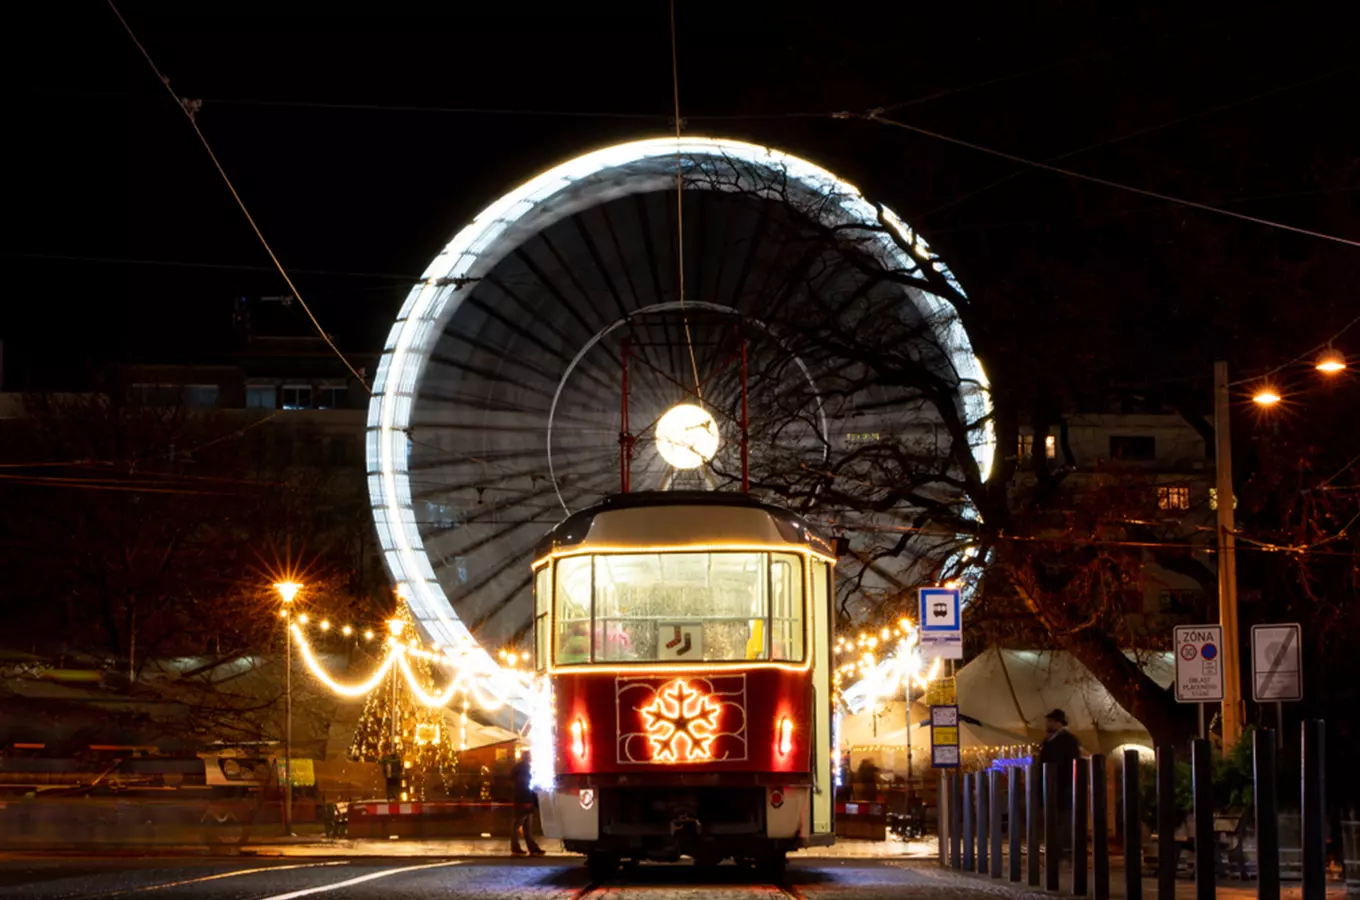 Už jste se svezli vánoční tramvají, trolejbusem nebo elektrobusem?